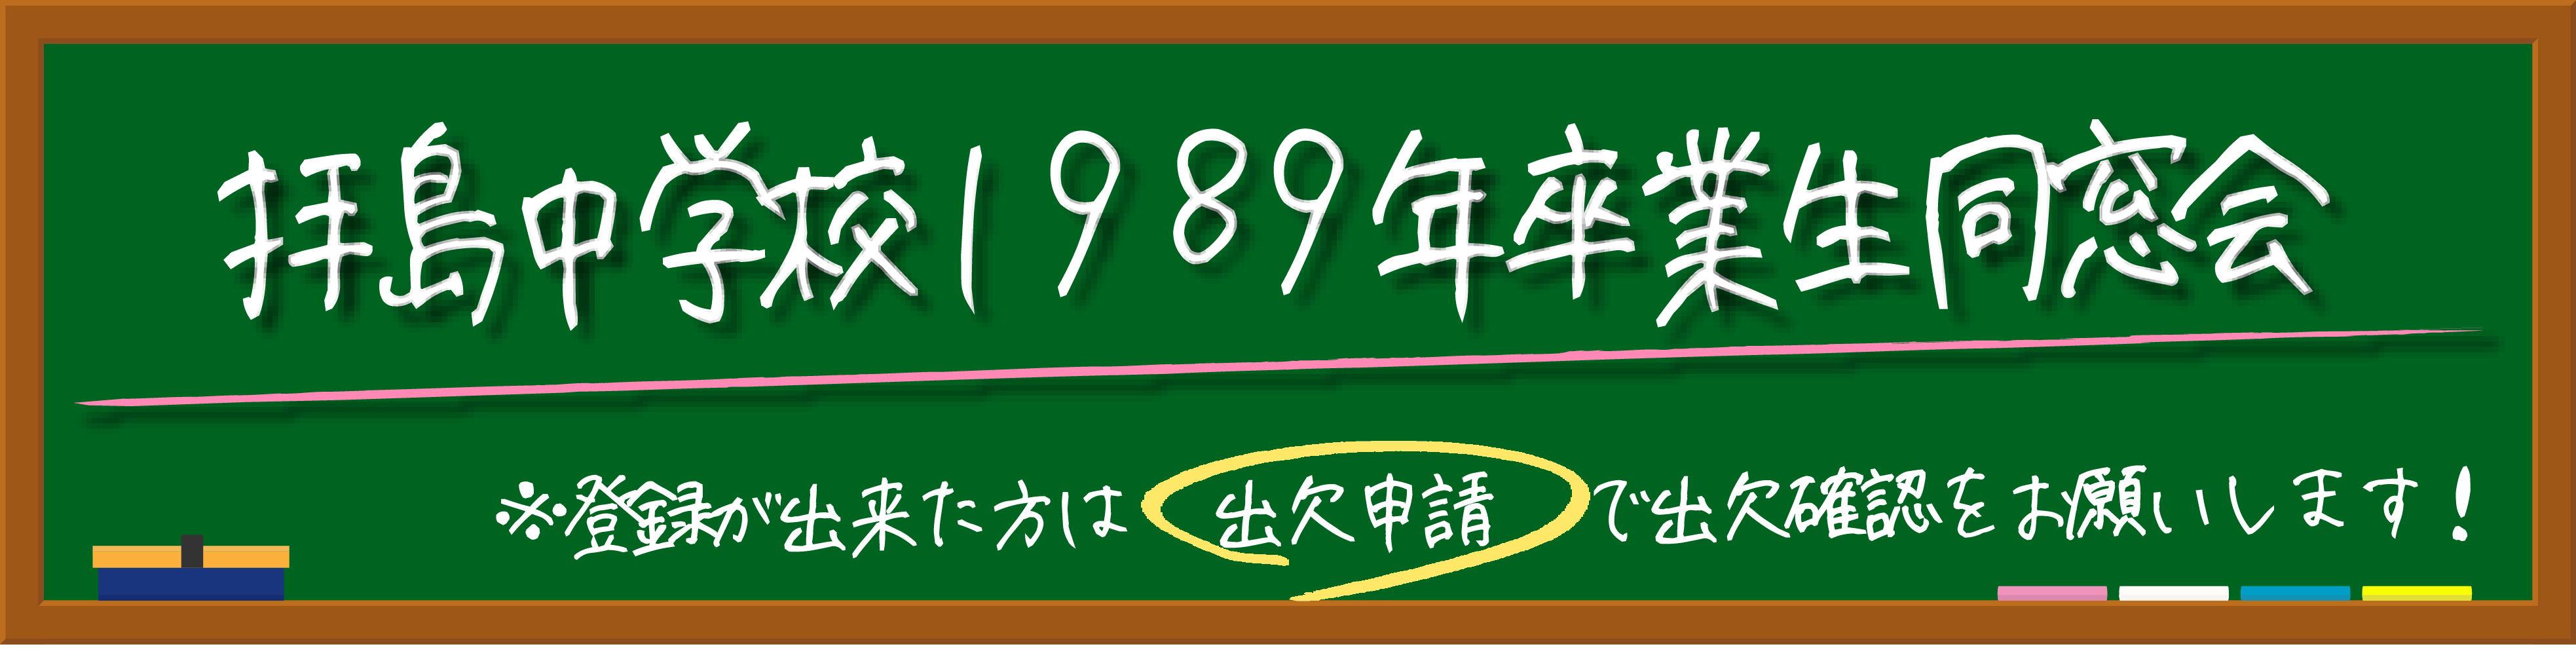 第3回拝島中学校1989年卒業生同窓会